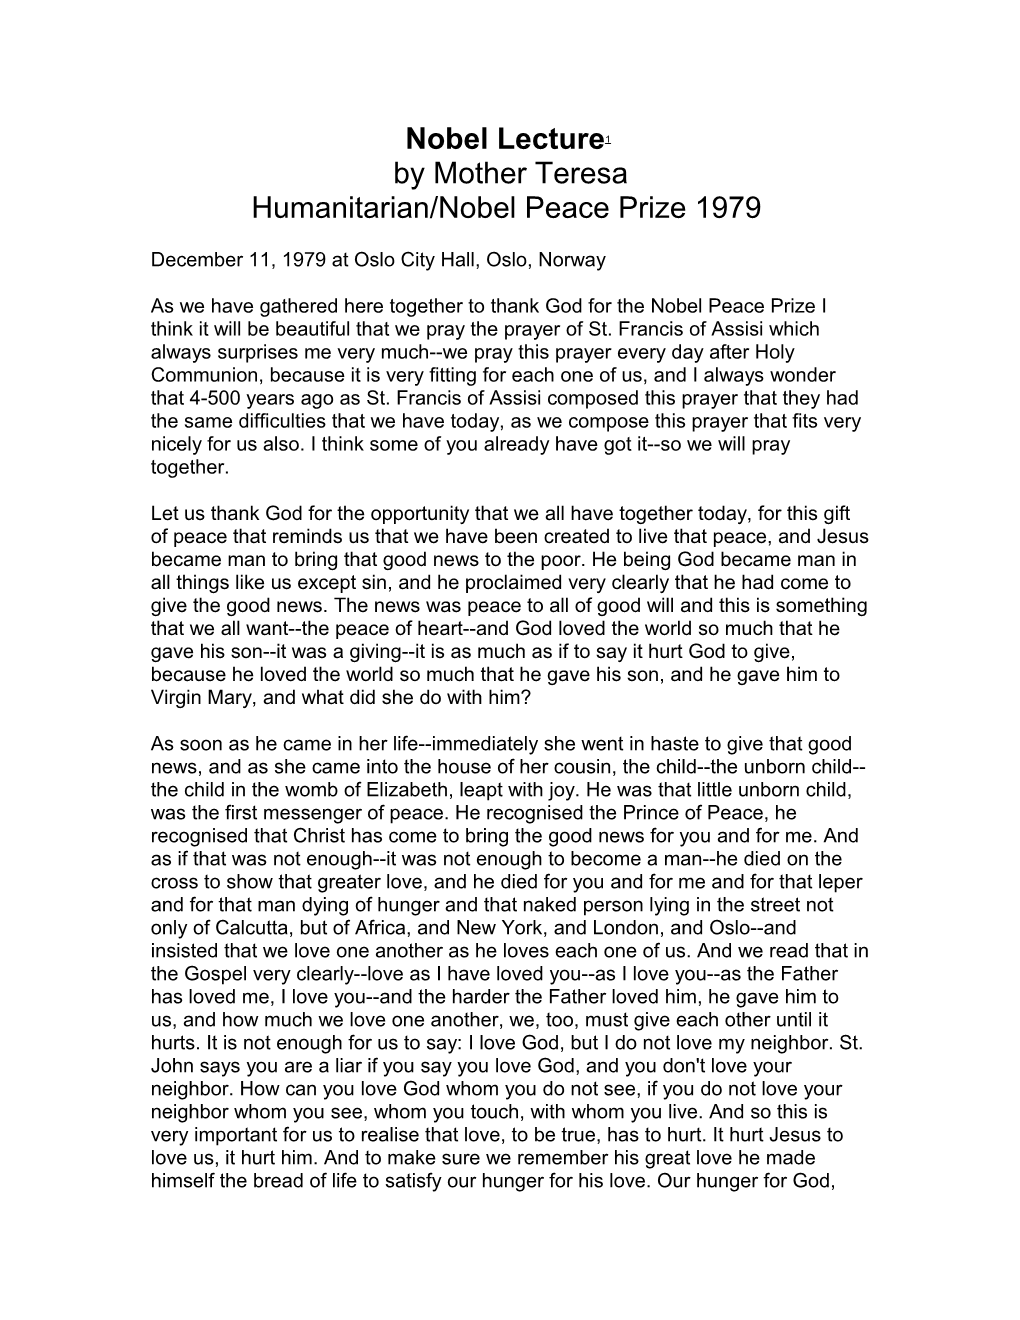 Nobel Lecture1 by Mother Teresa Humanitarian/Nobel Peace Prize 1979